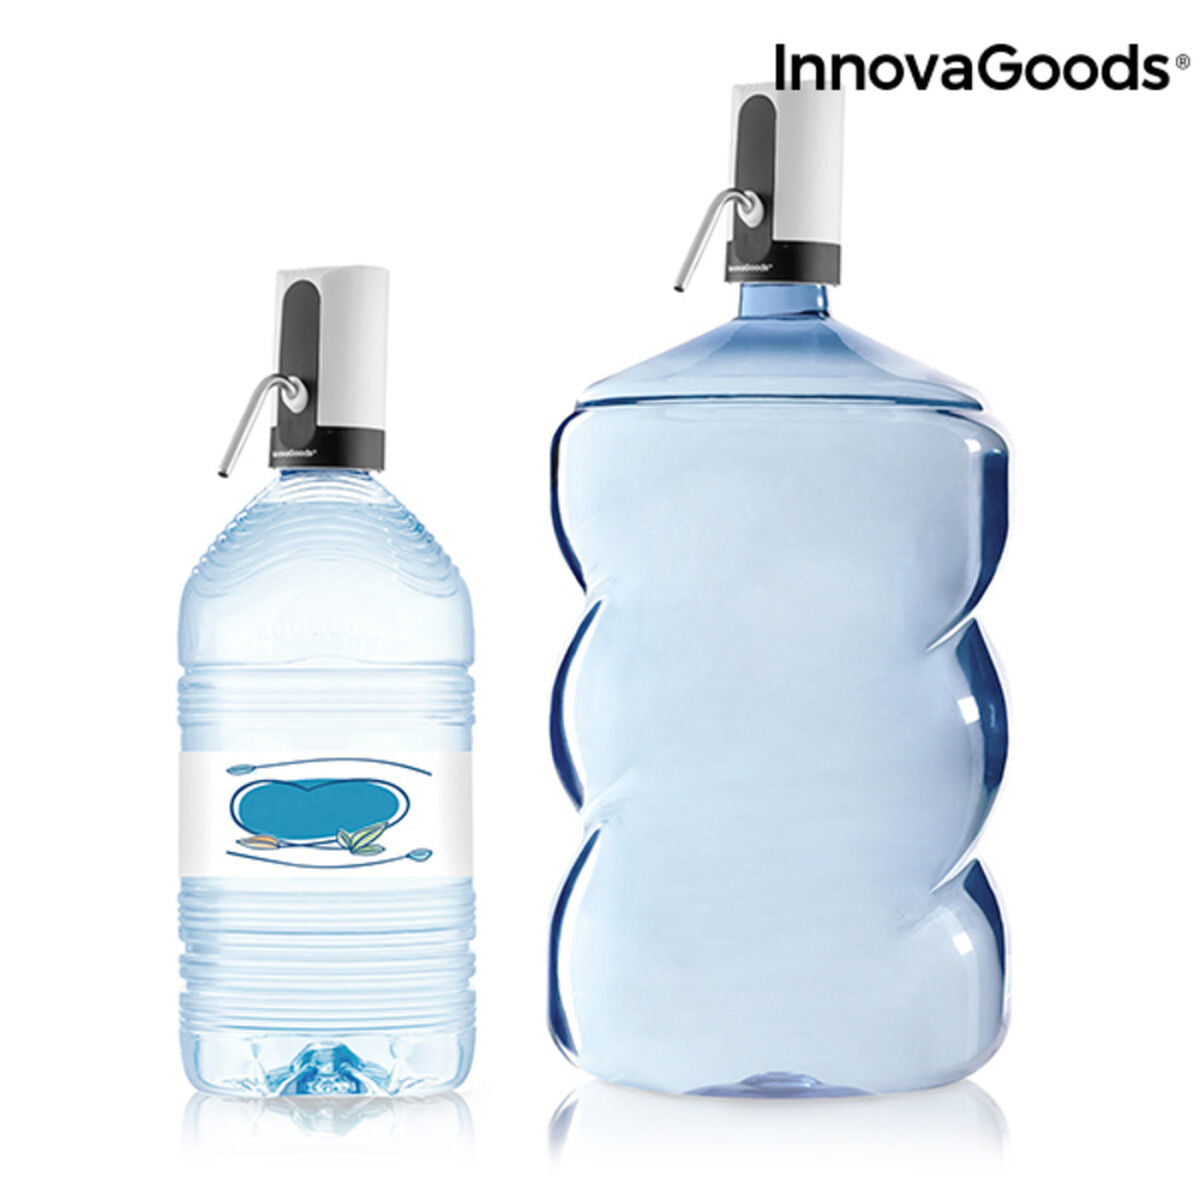 Fontaine d'eau automatique et recharchable InnovaGoods Blanc ABS 20 L (Reconditionné A)